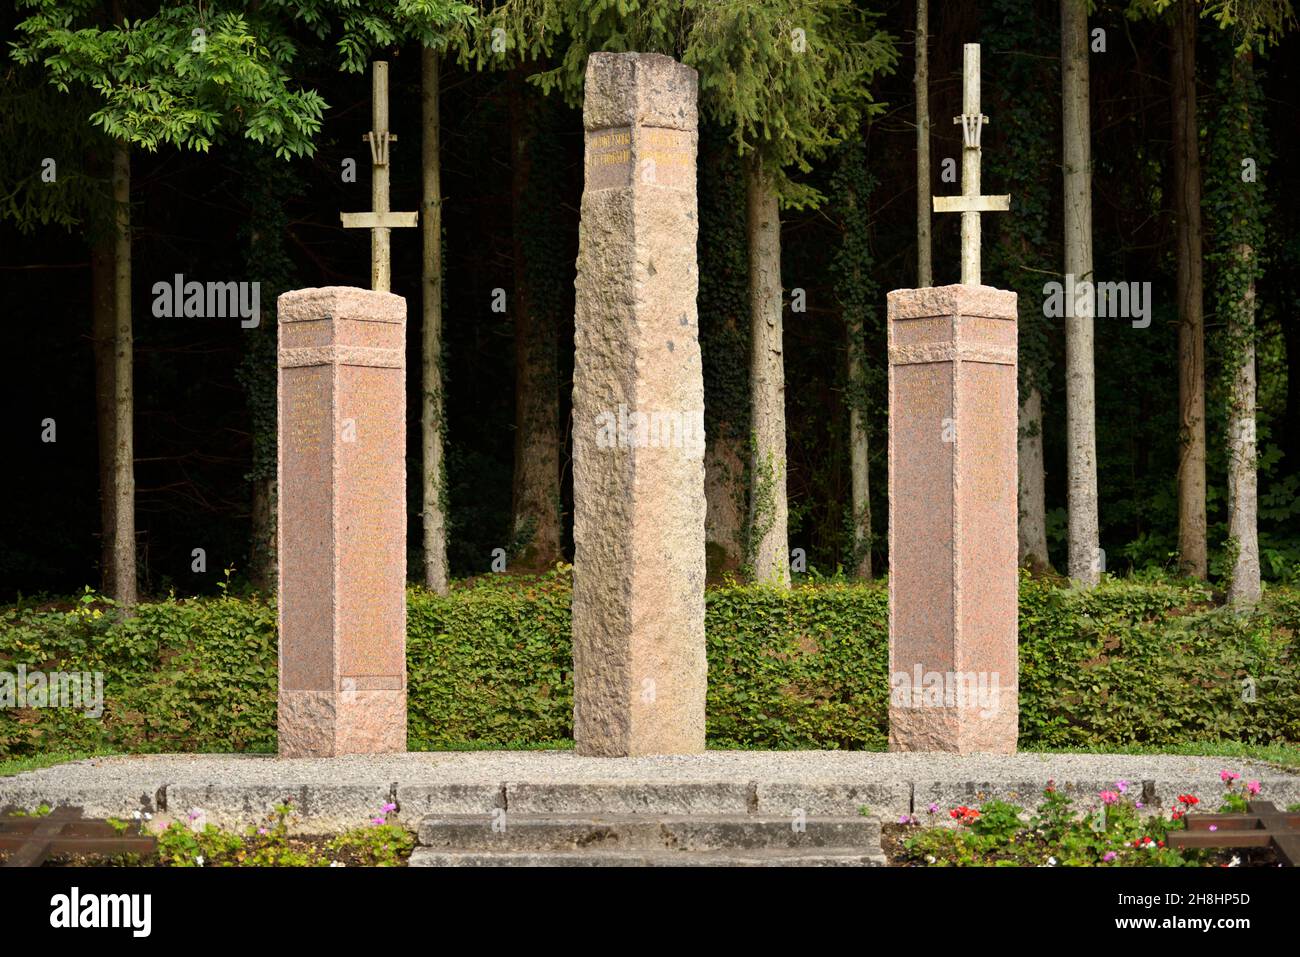 Francia, Meurthe-et-Moselle (54), Champigneulles, luogo chiamato la Malpierre, monumento in memoria dei 63 combattenti di resistenza sparati tra il 1941 e il 1944 dagli occupanti tedeschi nella radura di la Malpierre Foto Stock